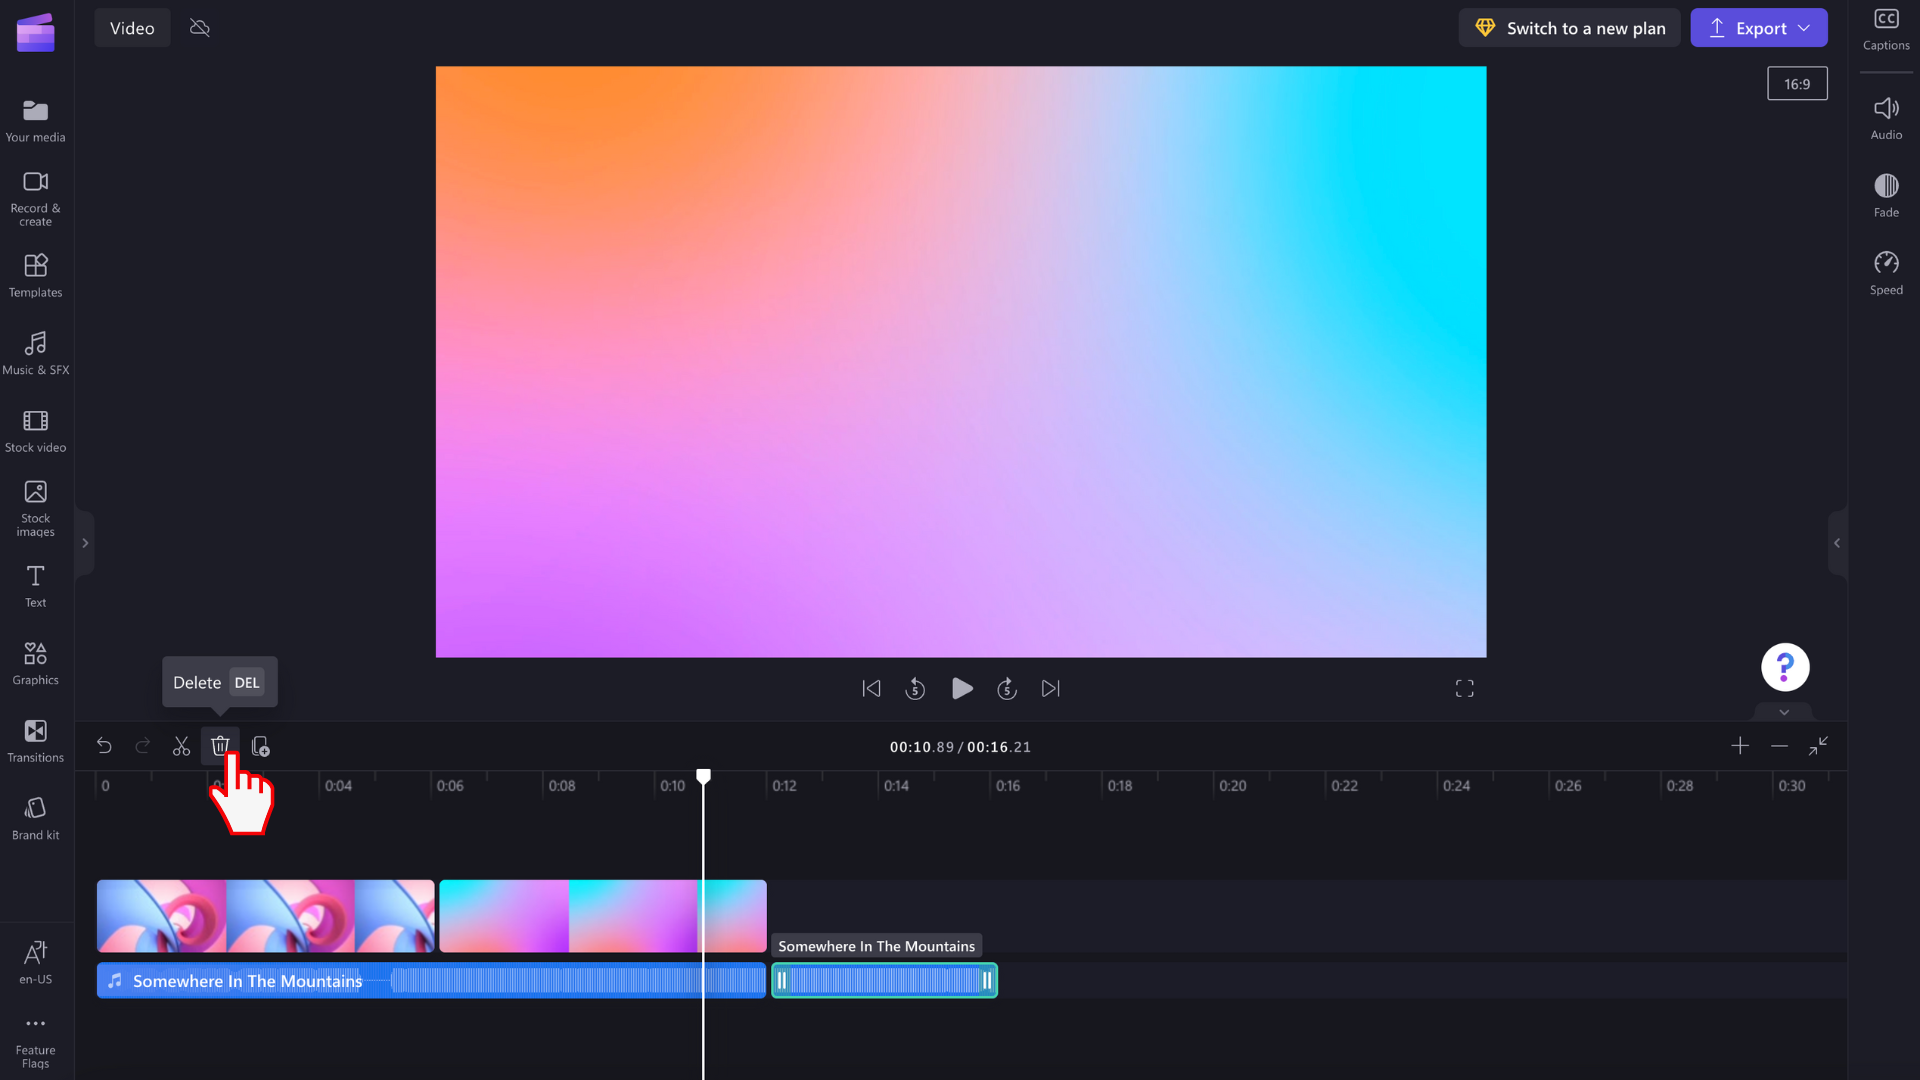 O imagine cu un utilizator glisând și fixând conținut audio în cronologie.